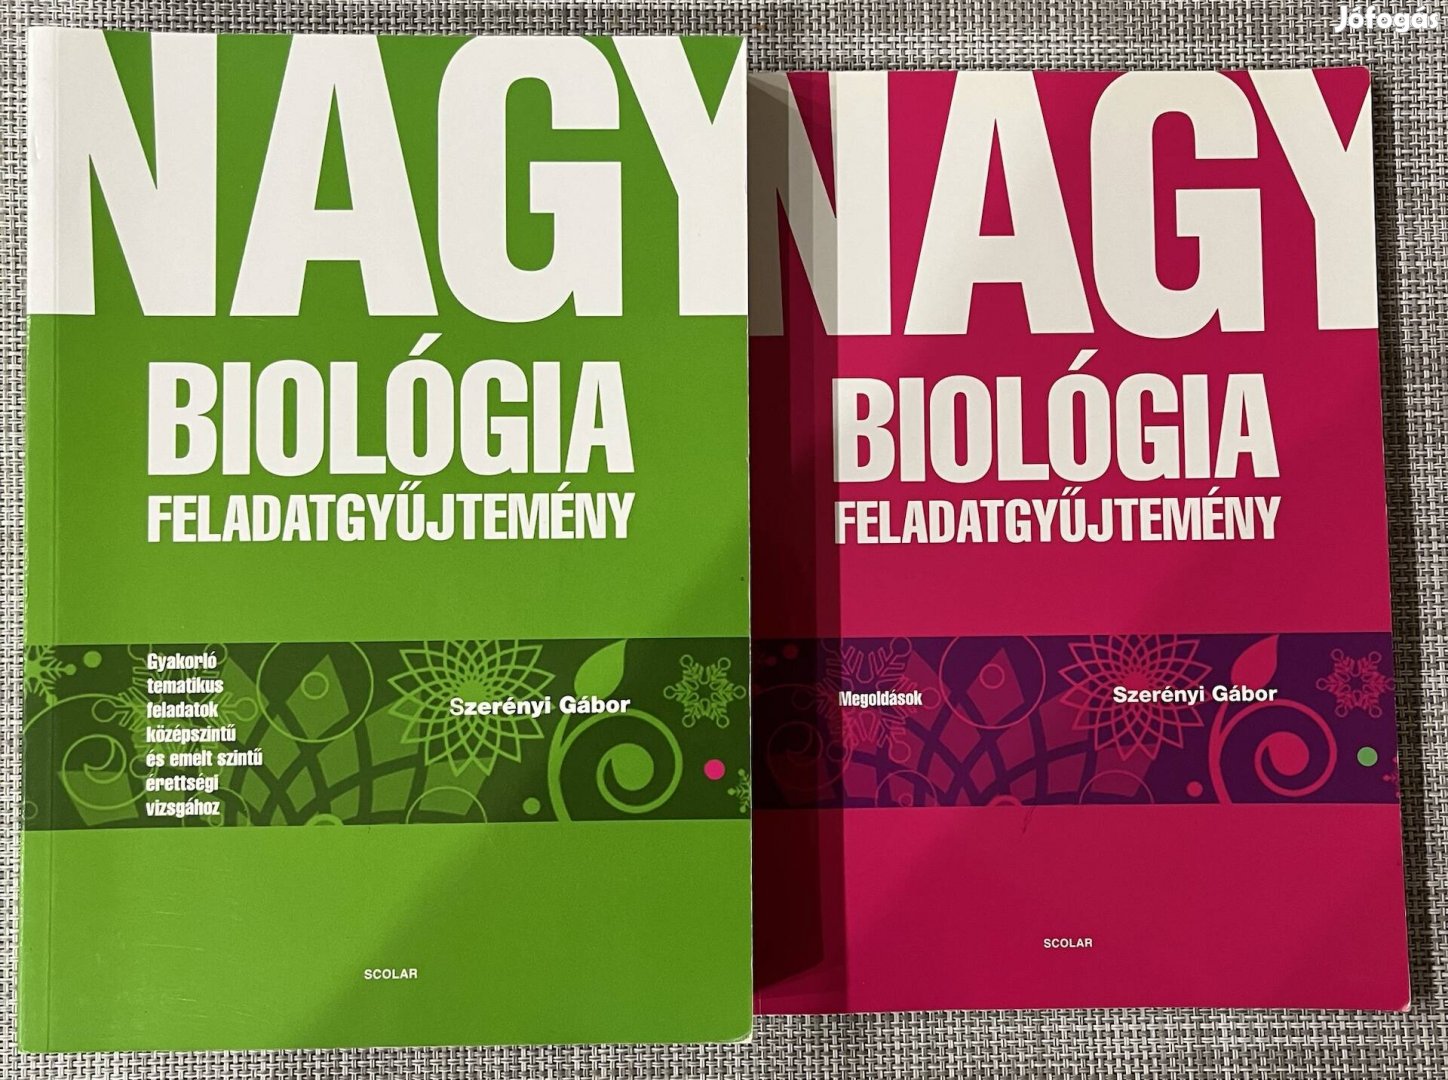 Nagy biológia feladatgyűjtemény + megoldások (Dr. Szerényi Gábor)